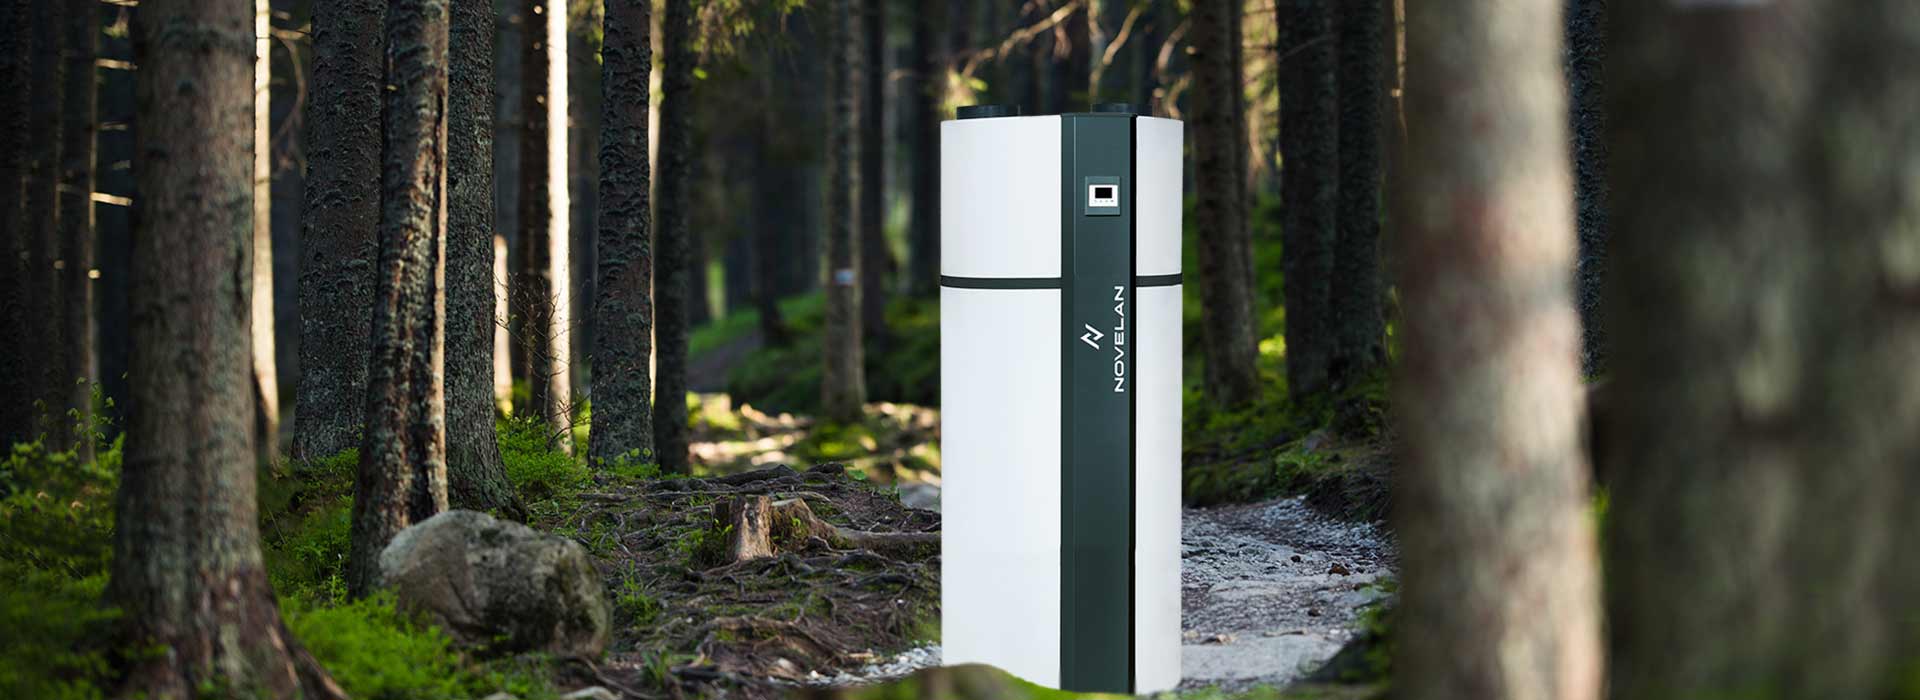 Montage Brauchwarmwasserspeicher im Wald